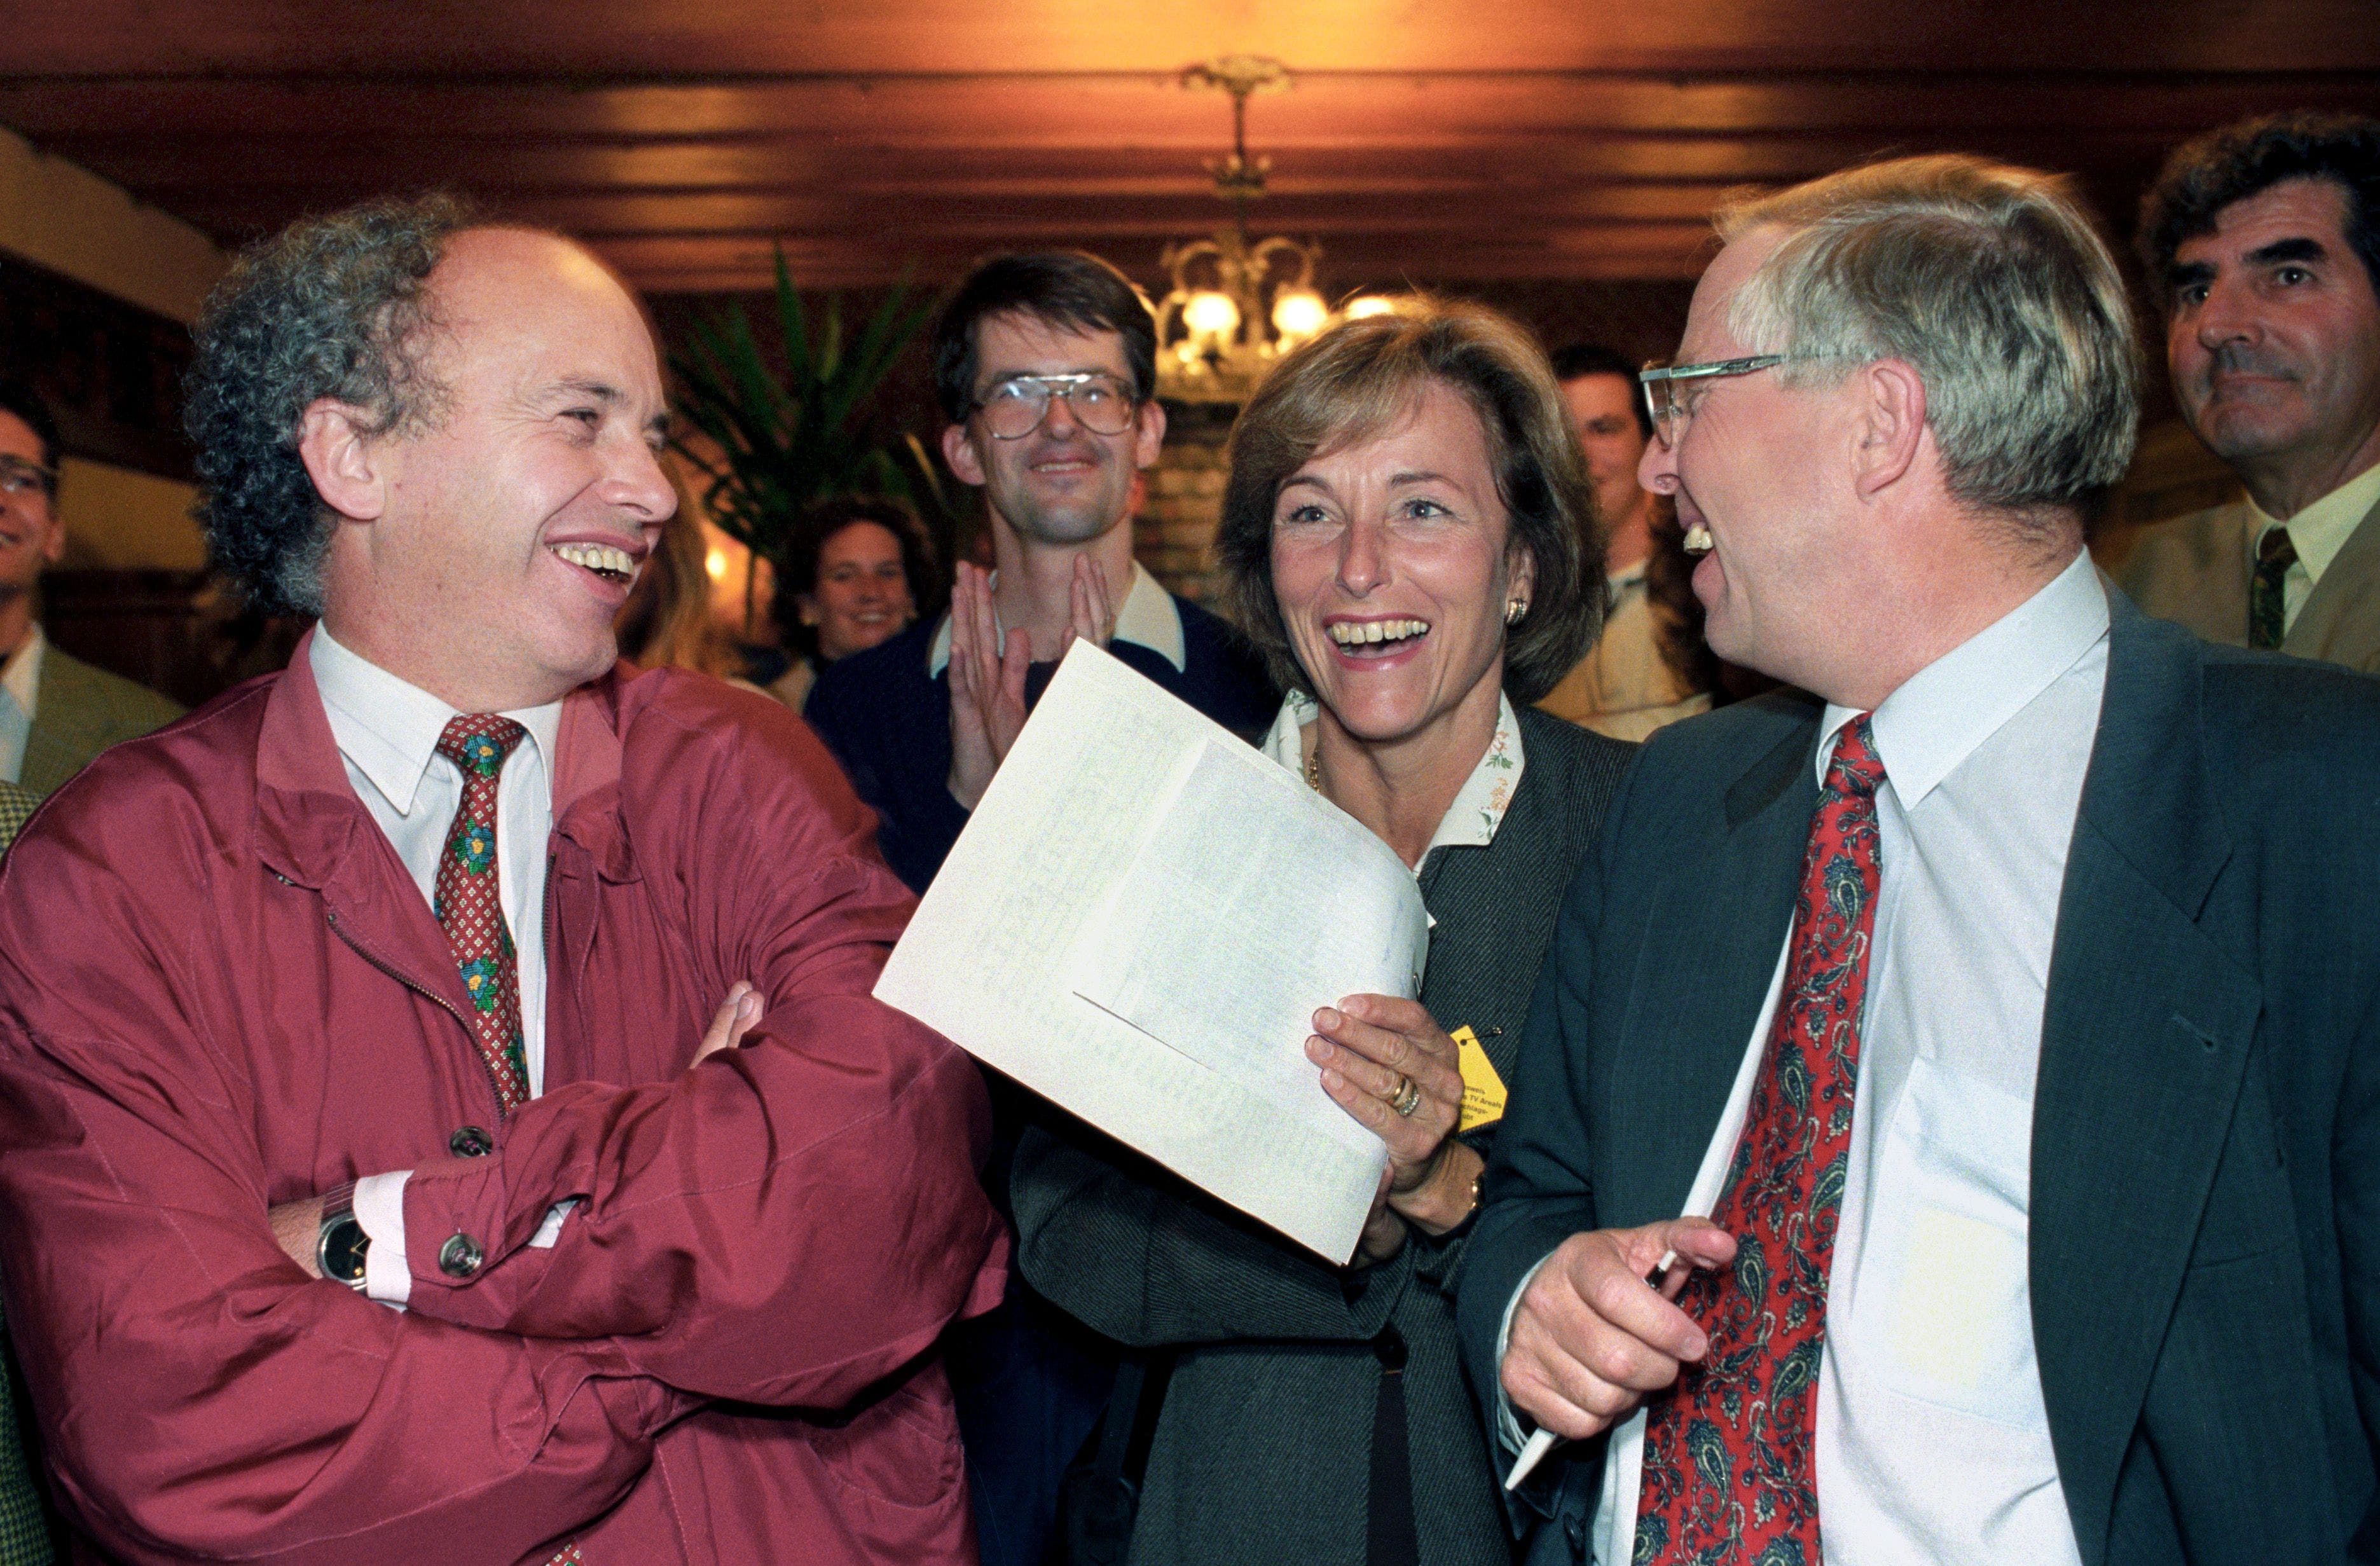 Der Nationalrat Ueli Maurer wartet am 22. Oktober 1995 zusammen mit Parteikollege und Nationalrat Christoph Blocher und dessen Ehefrau Silvia im Wahlstudio in Zürich auf die Resultate der Nationalratswahlen.